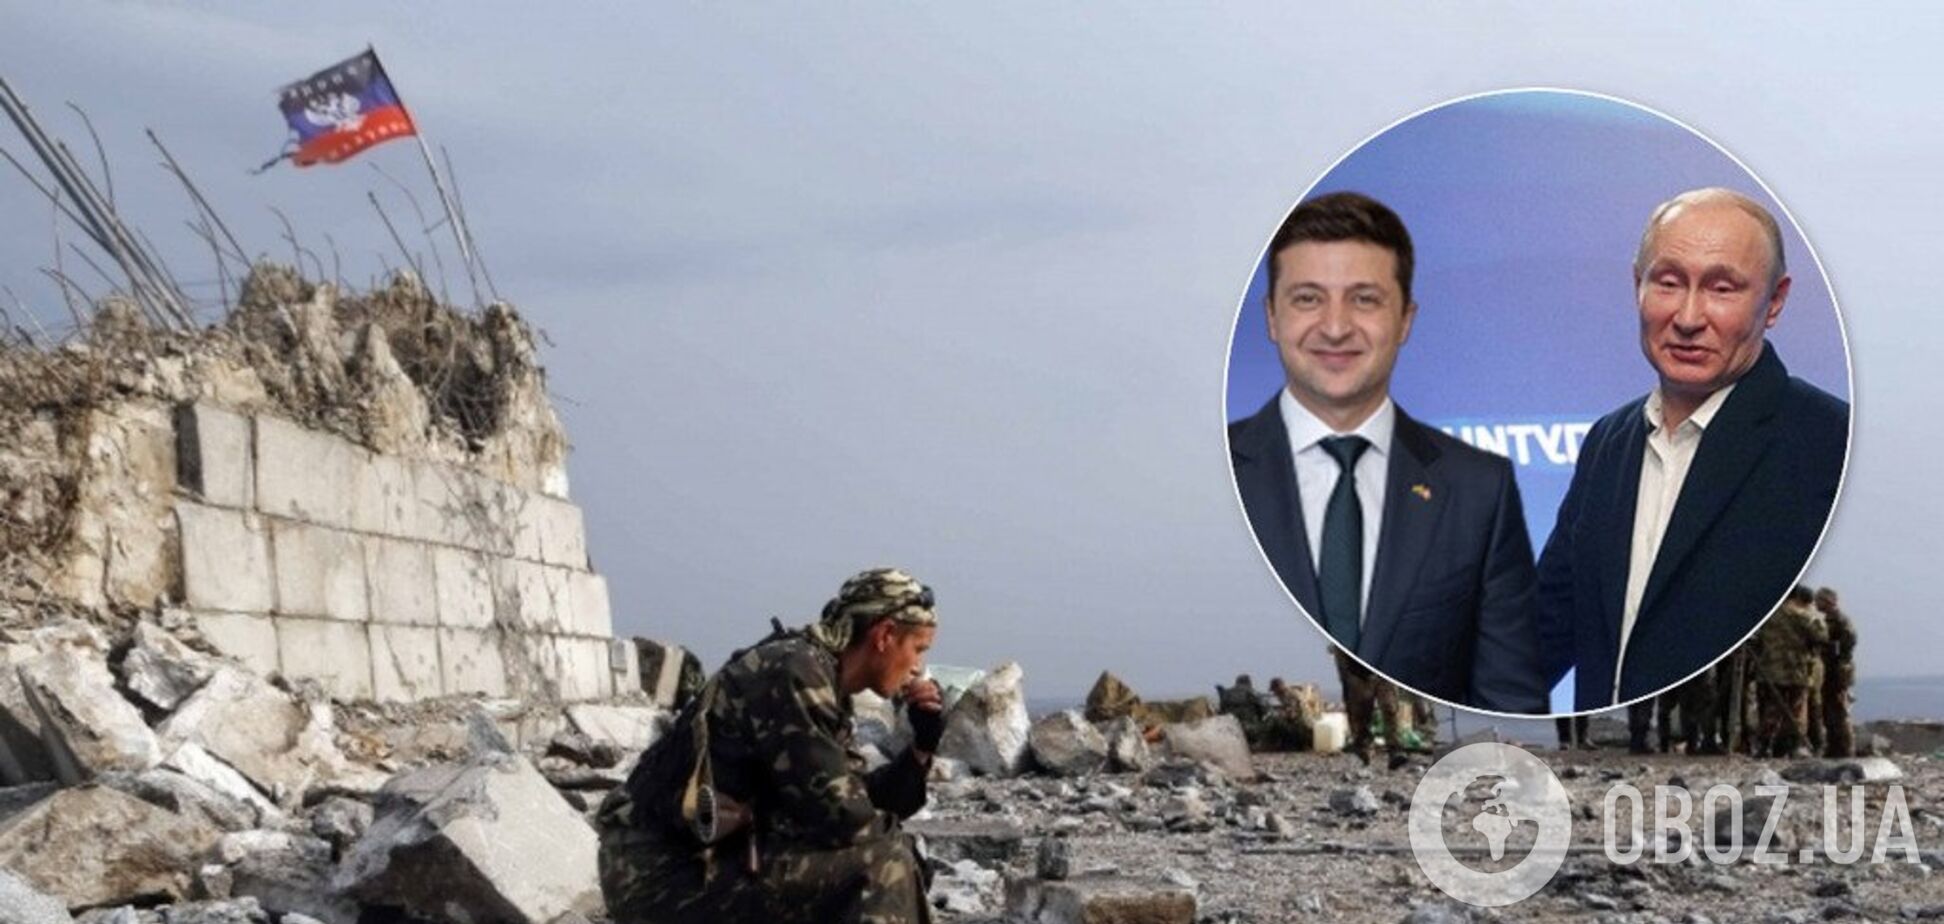 'Строительство Приднестровья': Тука сделал громкое заявление о 'нормандском соглашении' по Донбассу